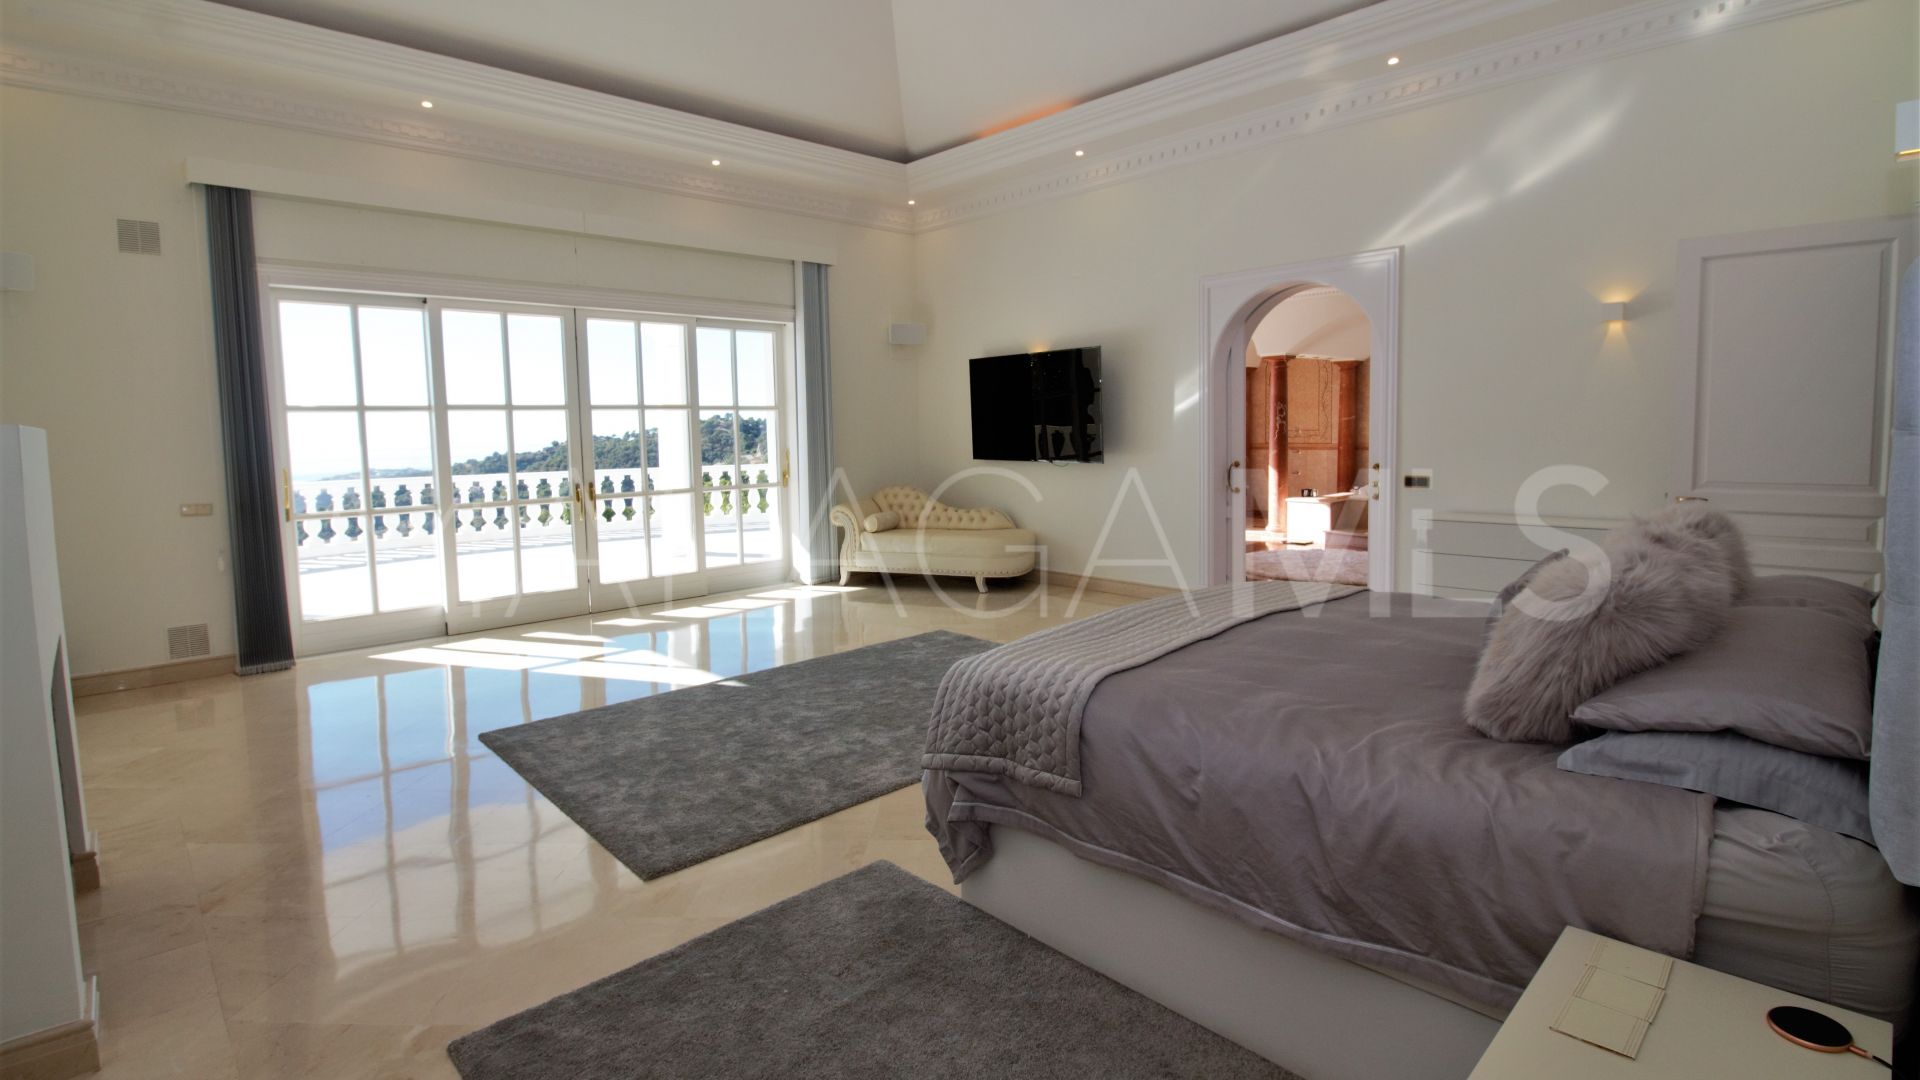 7 bedrooms villa in La Zagaleta for sale